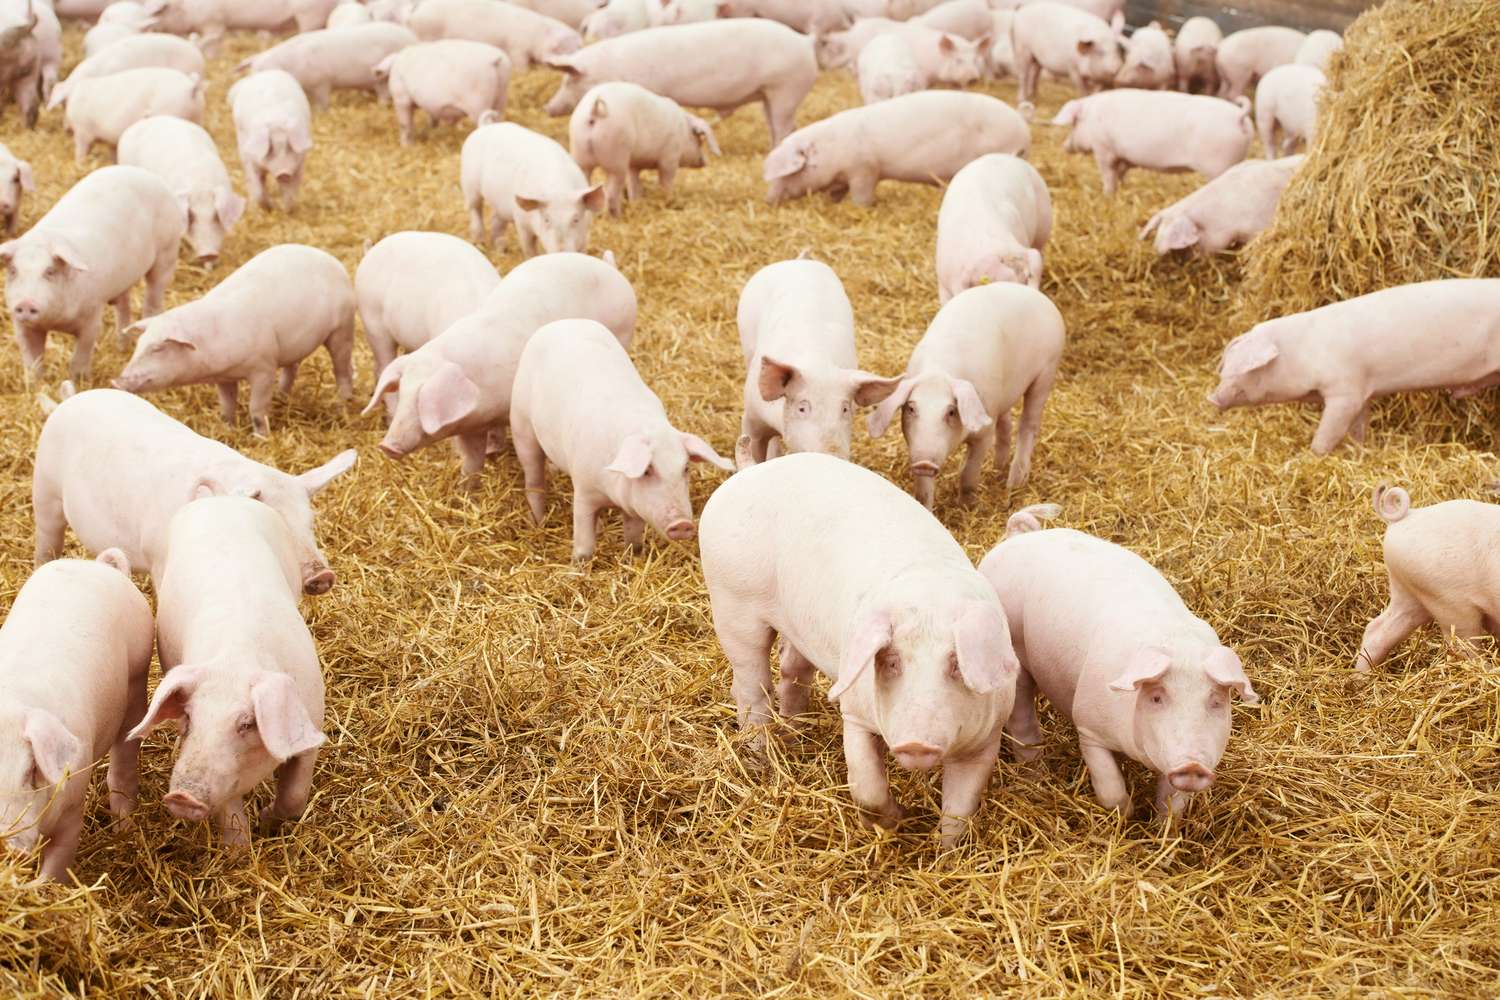 Cluster porcino: programa de concientización de triquinosis con escuelas rurales    |Cosas que pasan